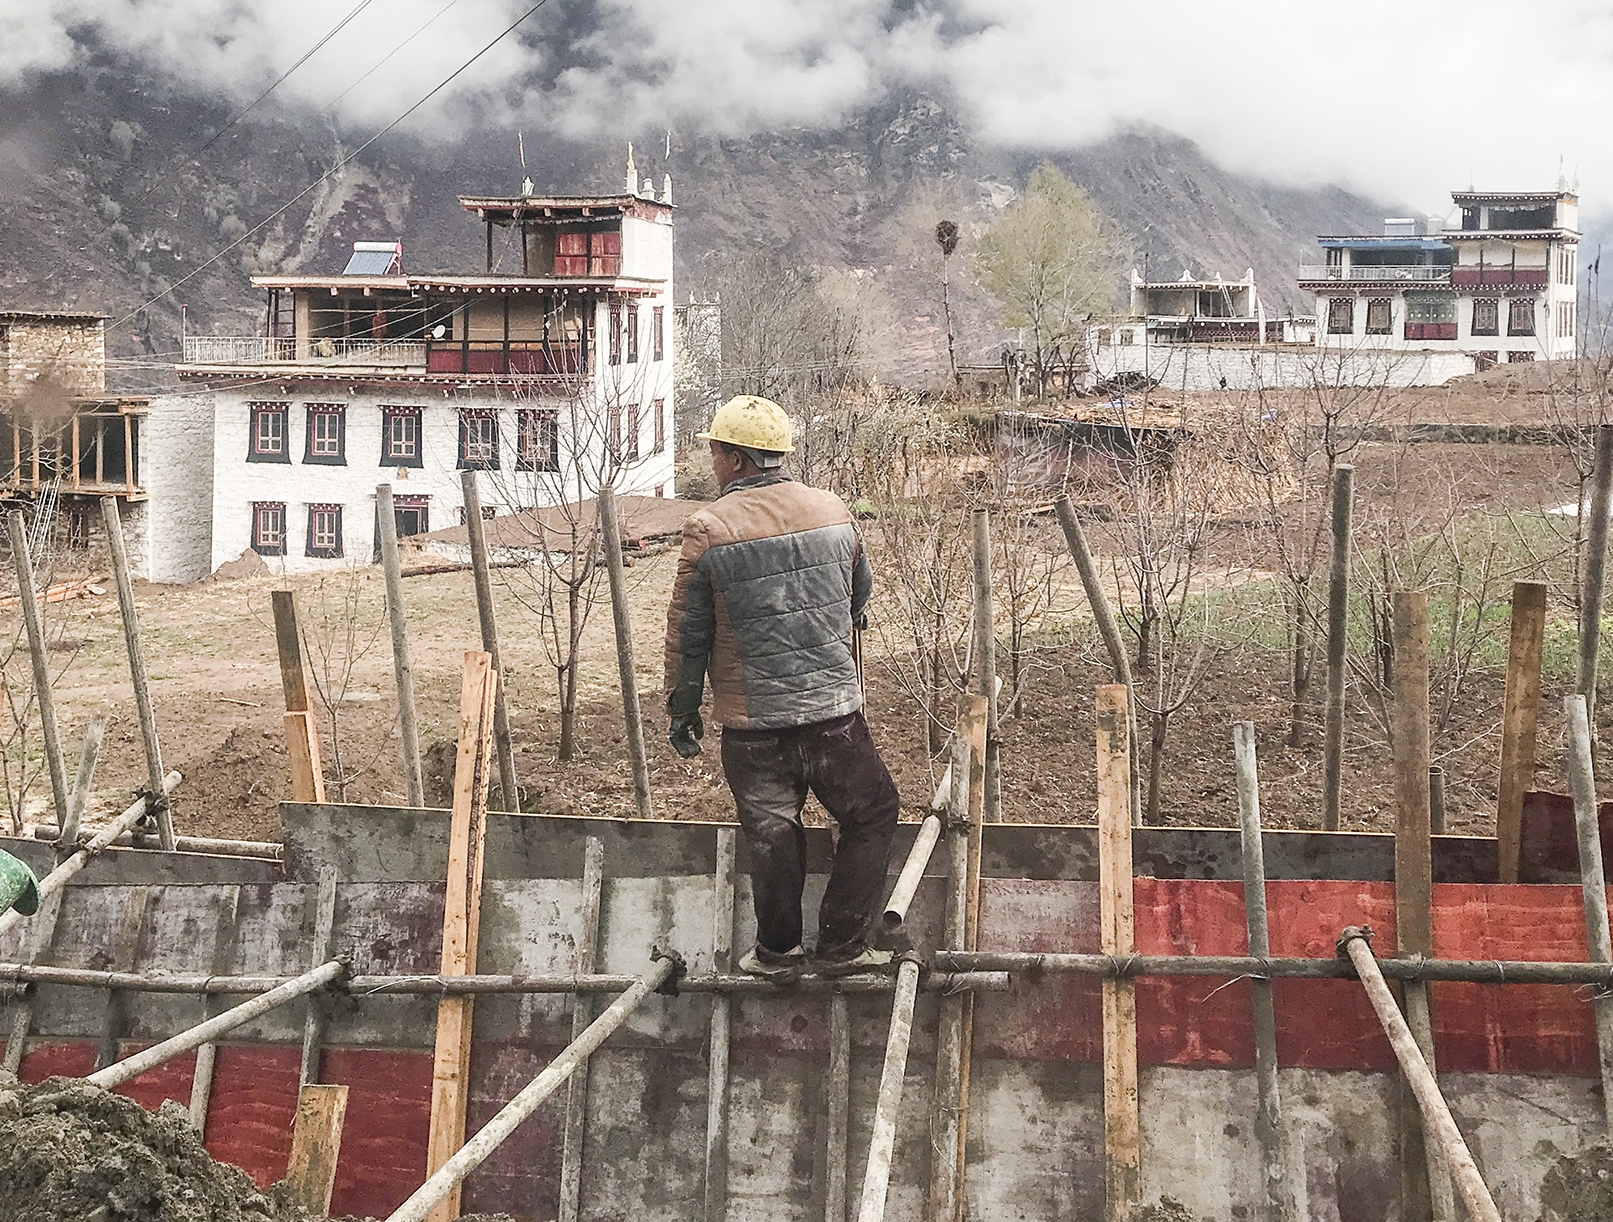 La costruzione di nuove infrastrutture nei villaggi tibetani del Danba, Sichuan (foto A. Pola,  2019)